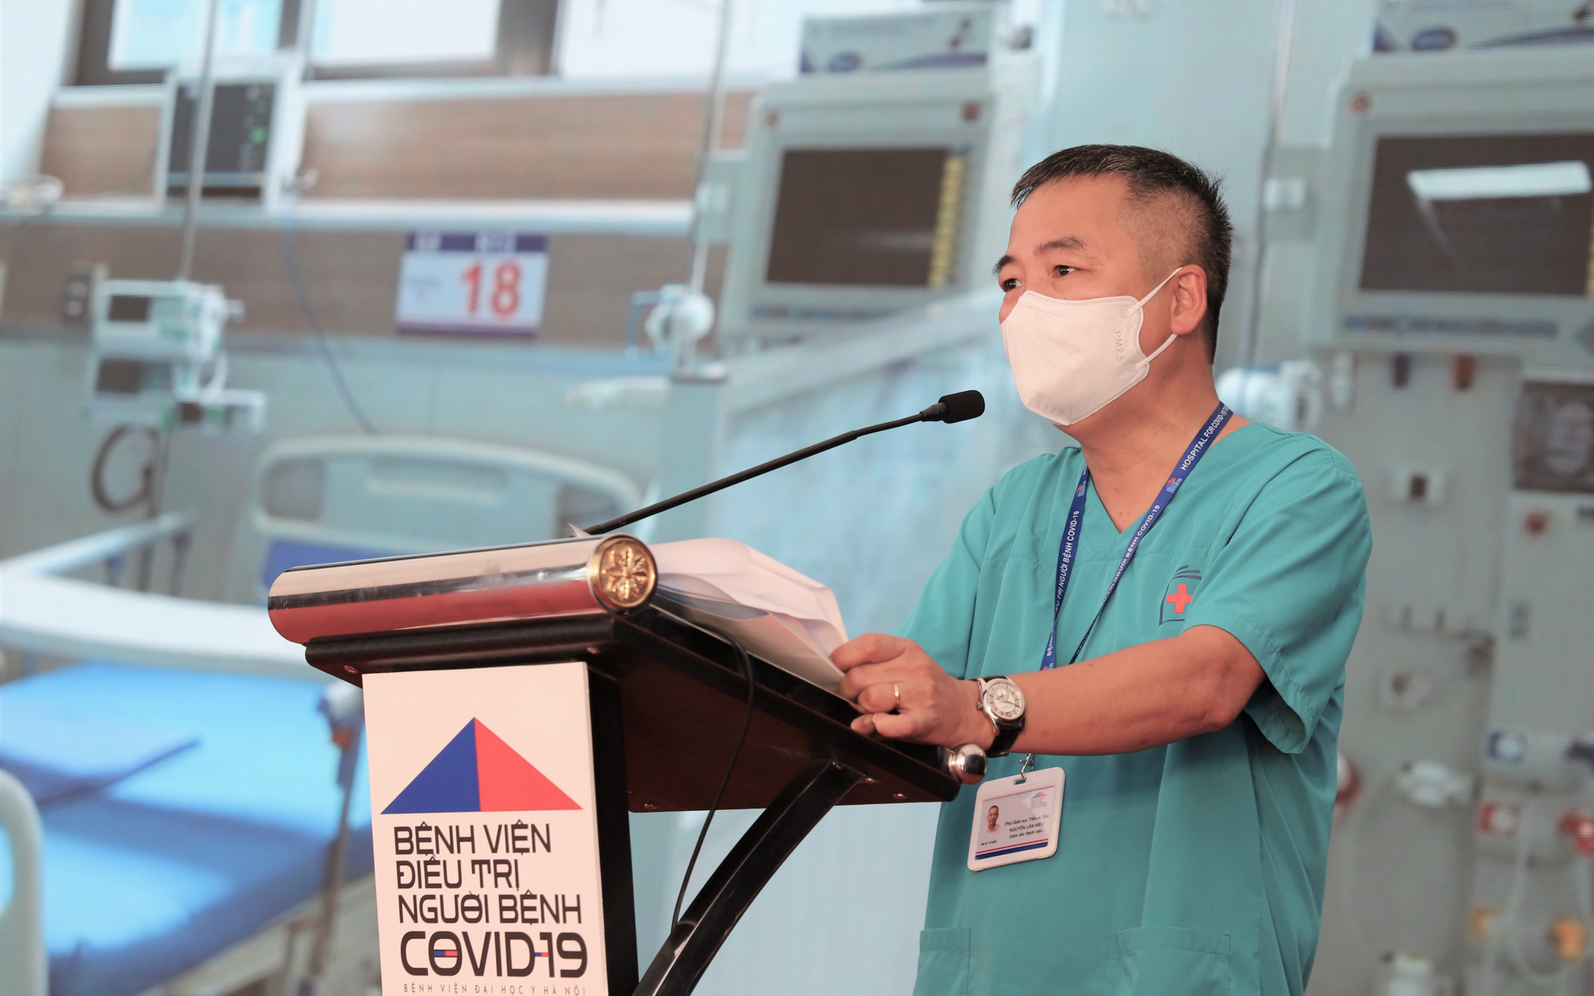 Giám đốc Bệnh viện dã chiến điều trị Covid-19 ở Hà Nội: &quot;Trong thâm tâm, tôi thực sự không muốn đón bệnh nhân, không muốn các giường bệnh bị lấp đầy&quot;